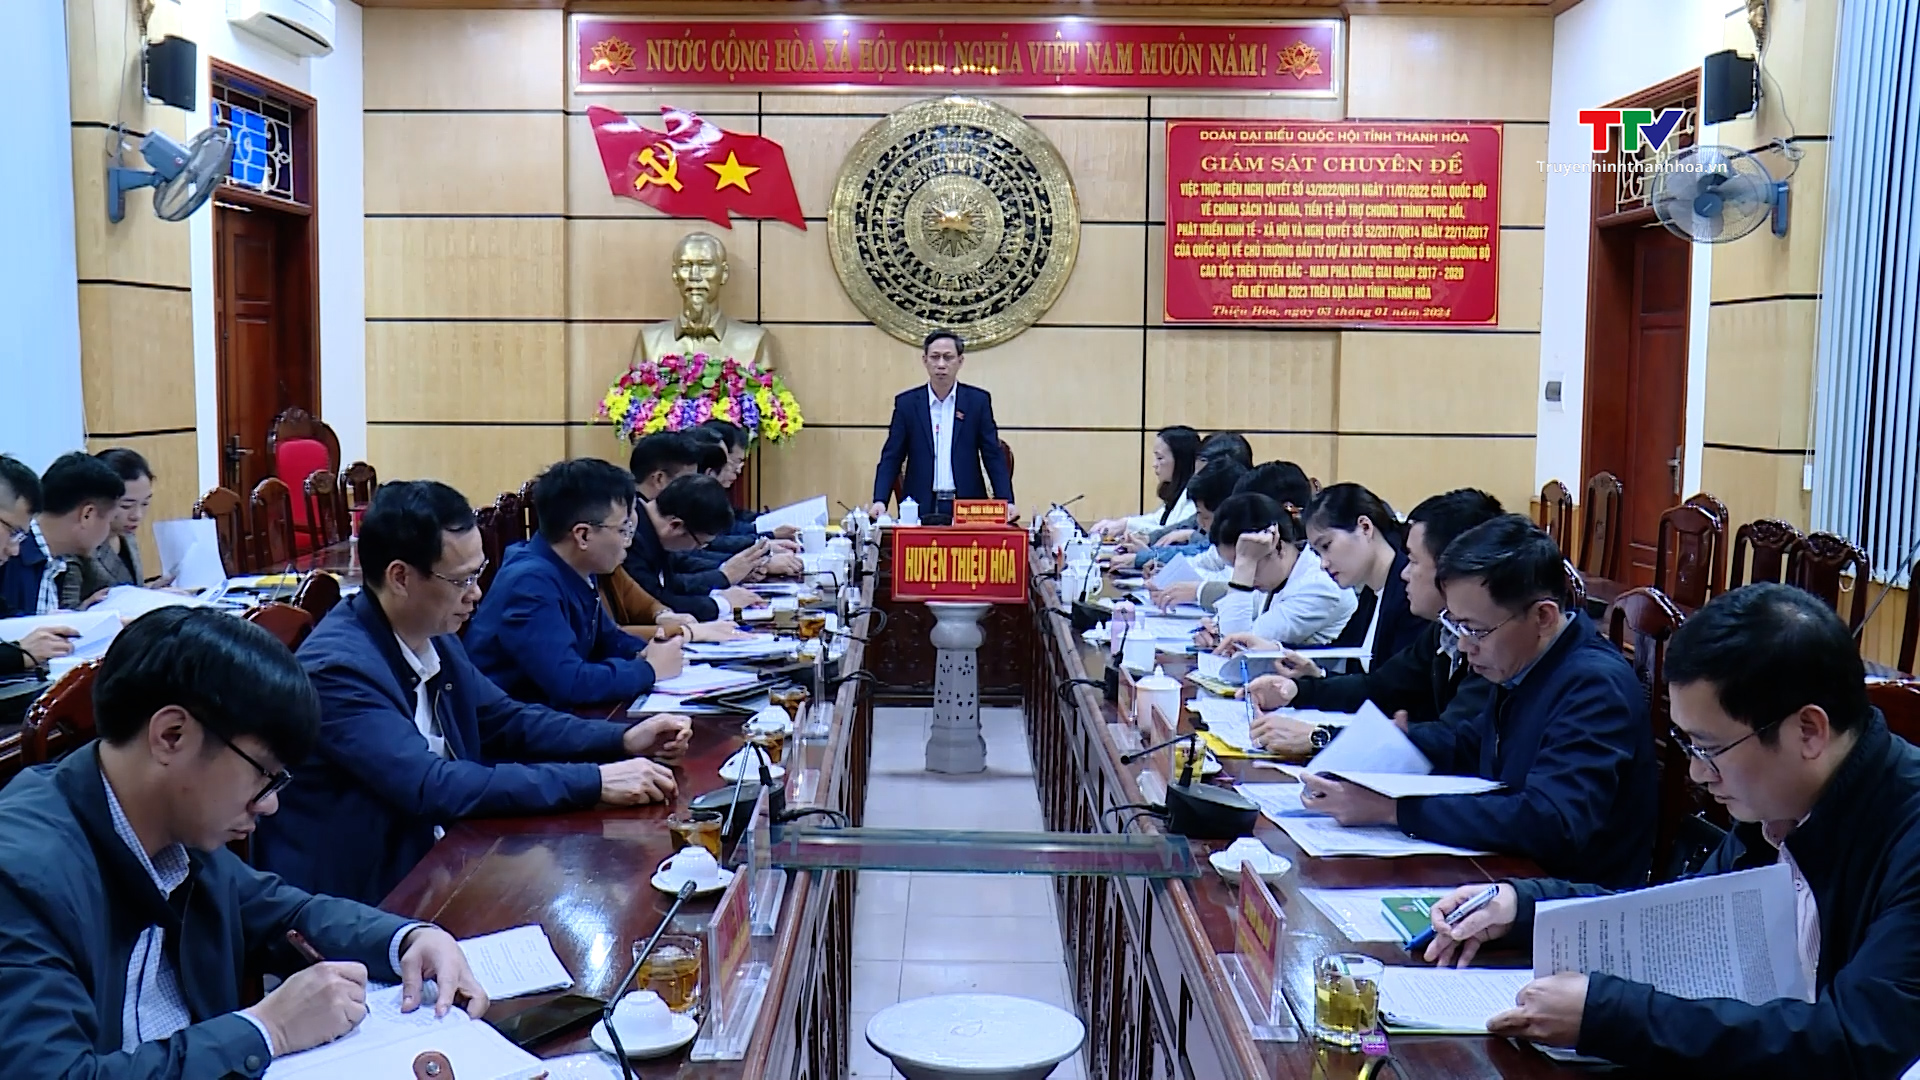 Đoàn Đại biểu Quốc hội tỉnh Thanh Hóa giám sát chuyên đề tại thị xã Bỉm Sơn và huyện Thiệu Hóa- Ảnh 1.